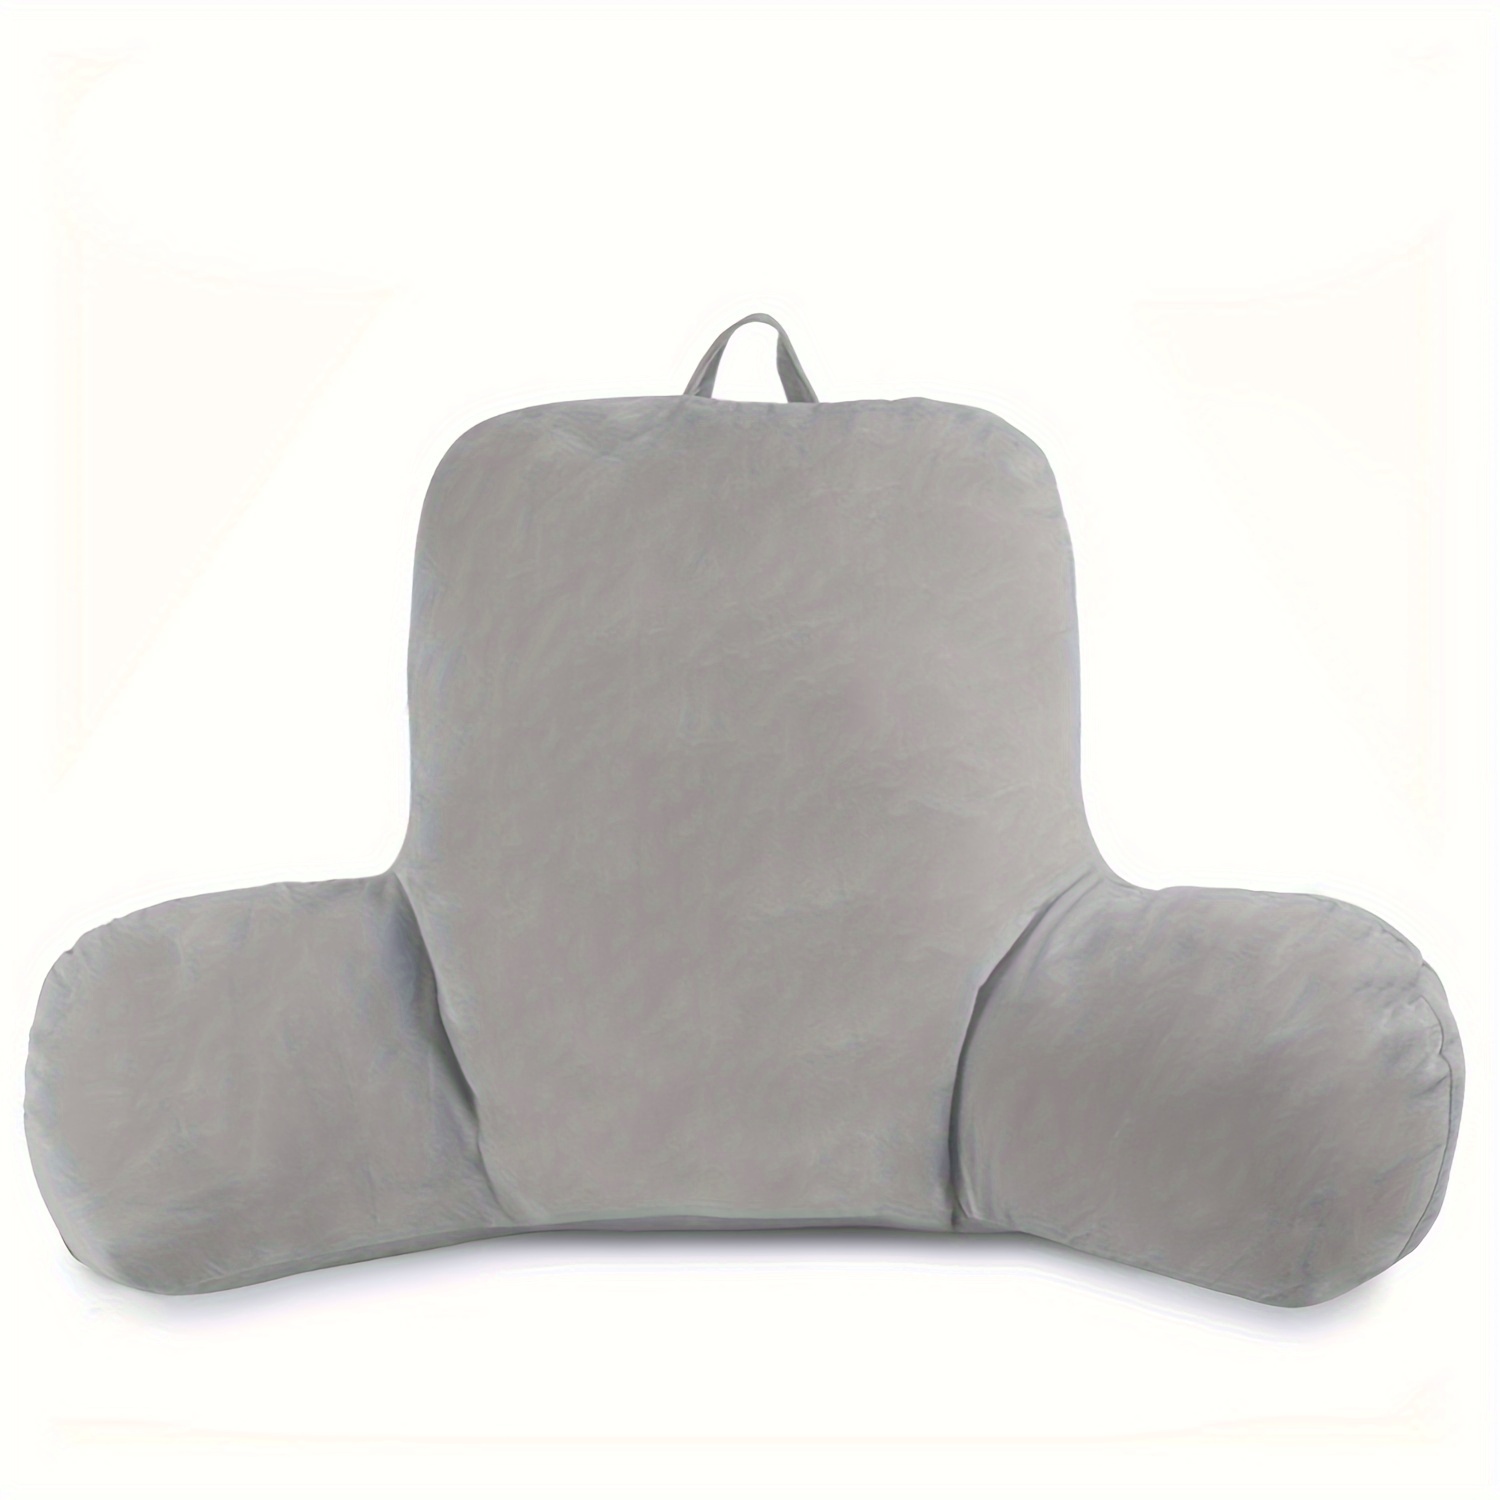 2 almohadas de forro polar lumbar de apoyo lumbar de 3 secciones, almohada  de apoyo lumbar para aliviar el dolor de espalda baja, cómoda almohada de